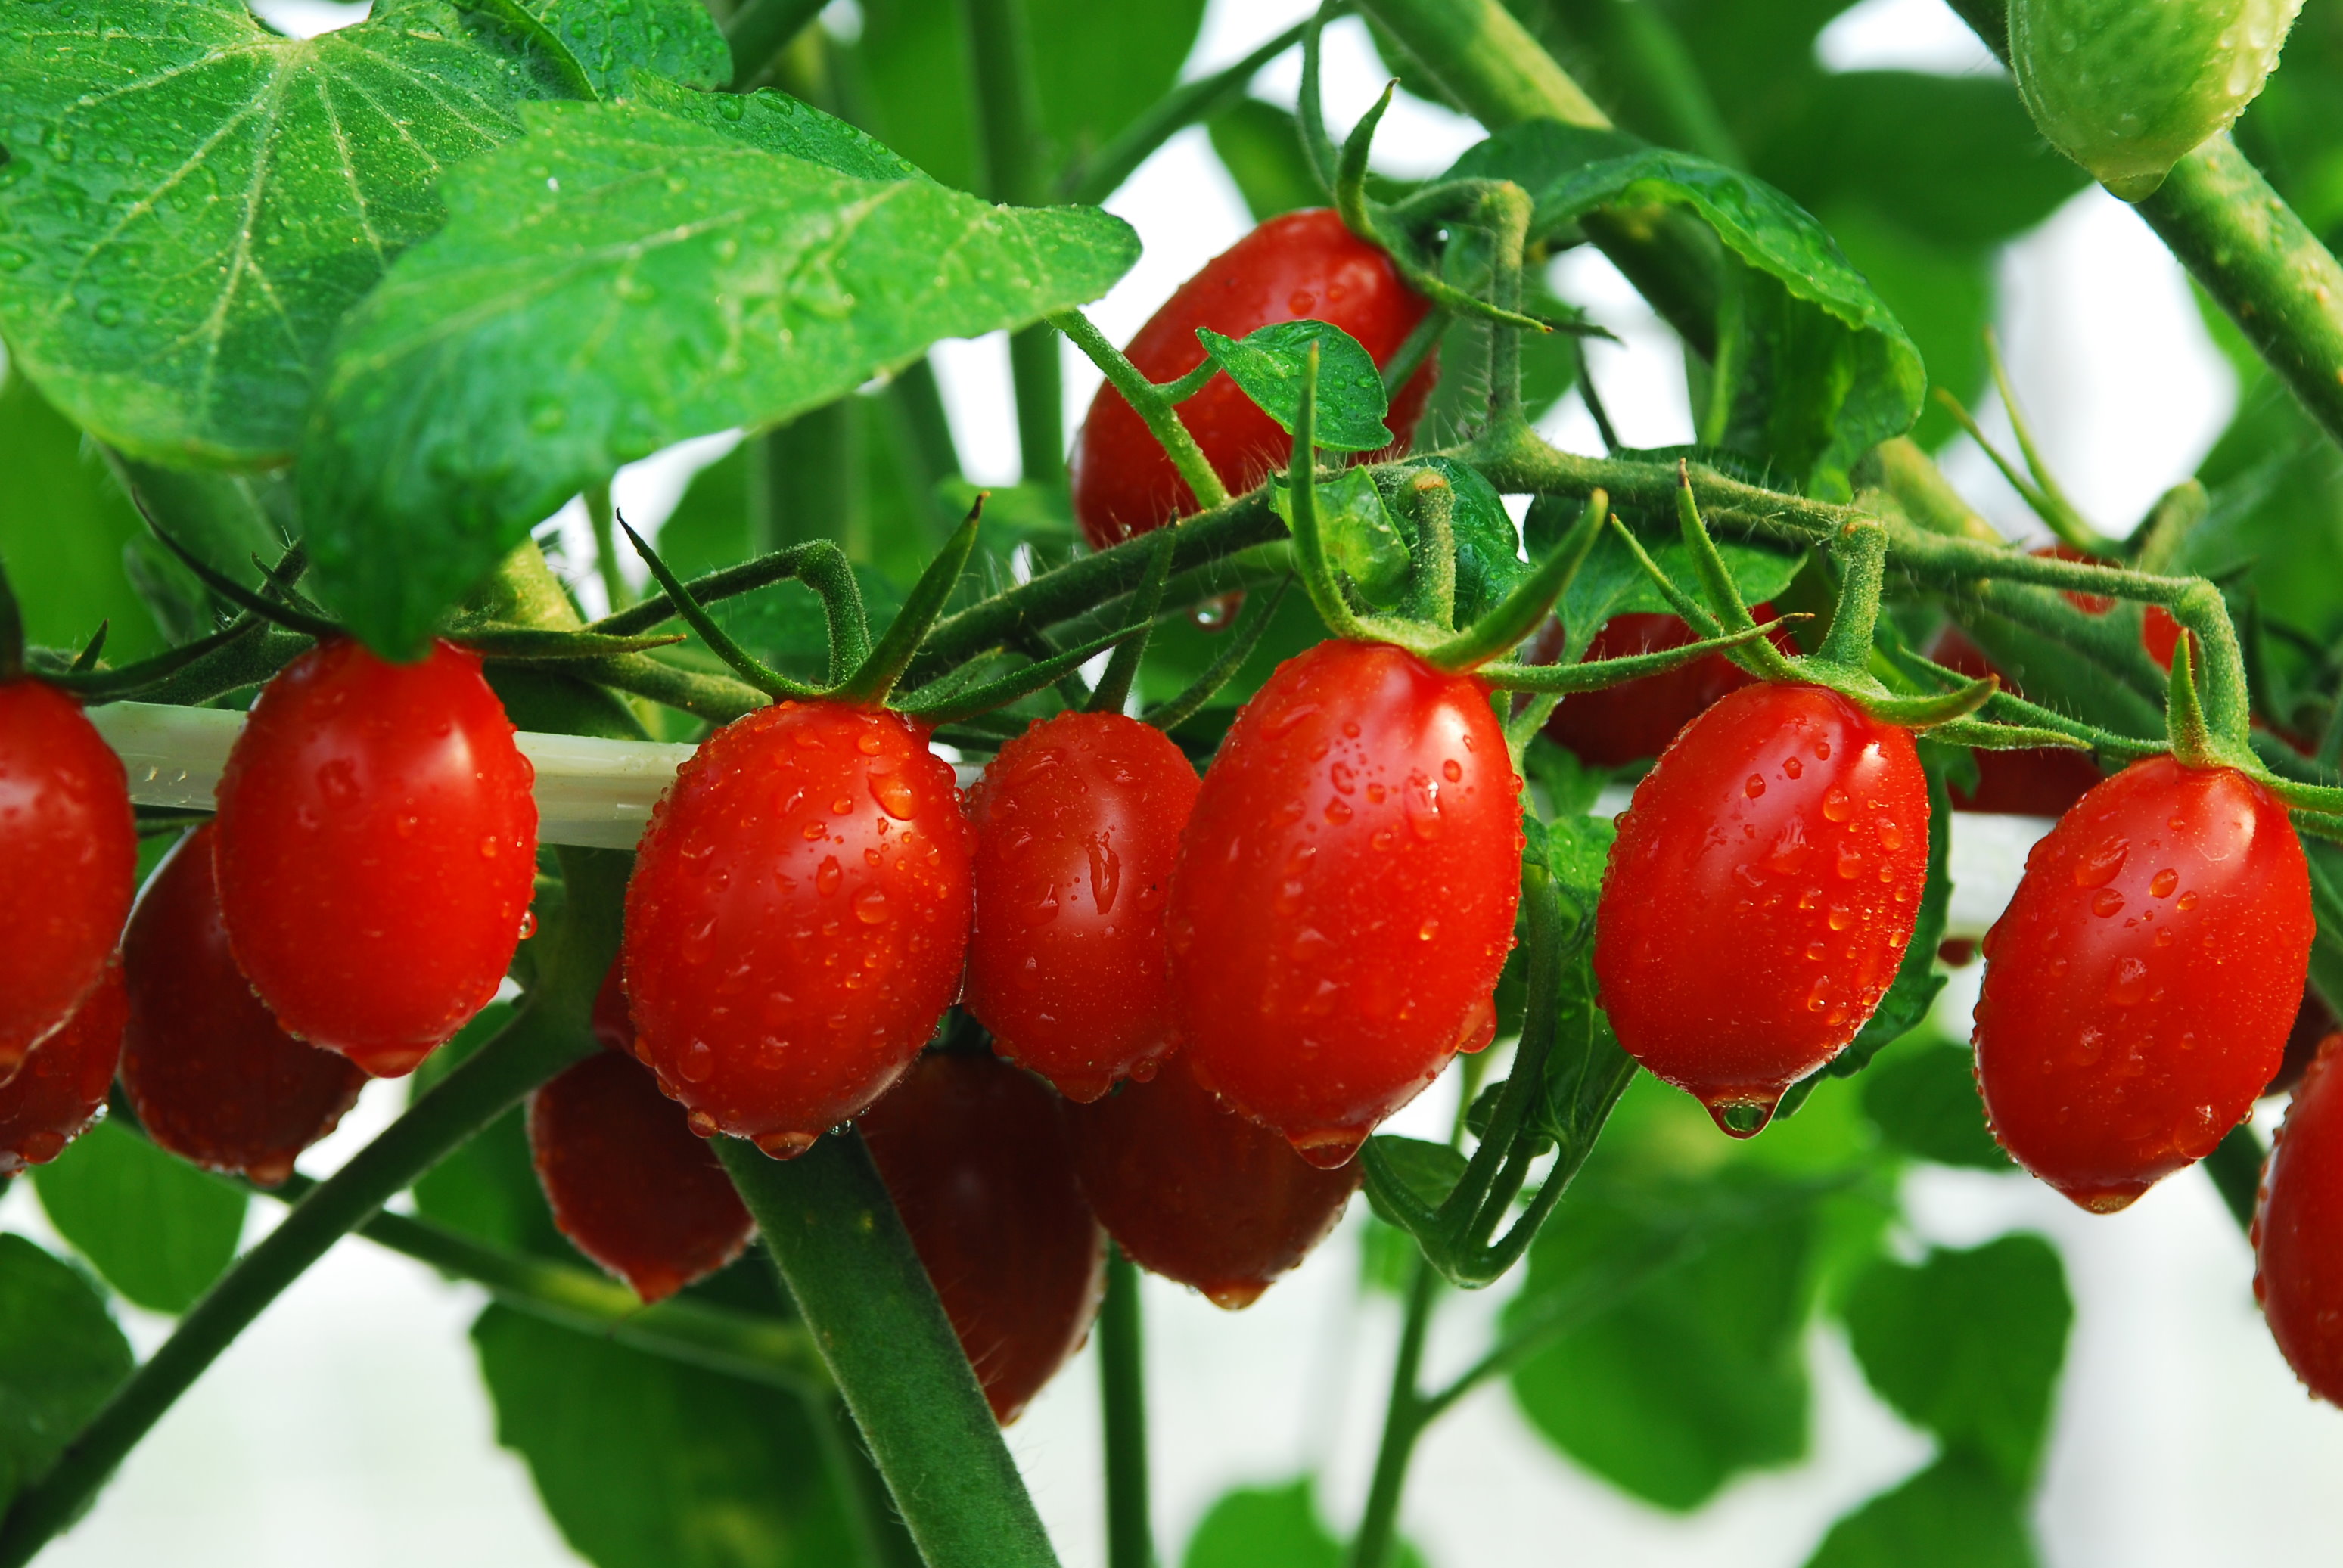 臺灣消費者喜愛色鮮紅、果實糖度高、果皮薄，食後無殘渣感的小果番茄